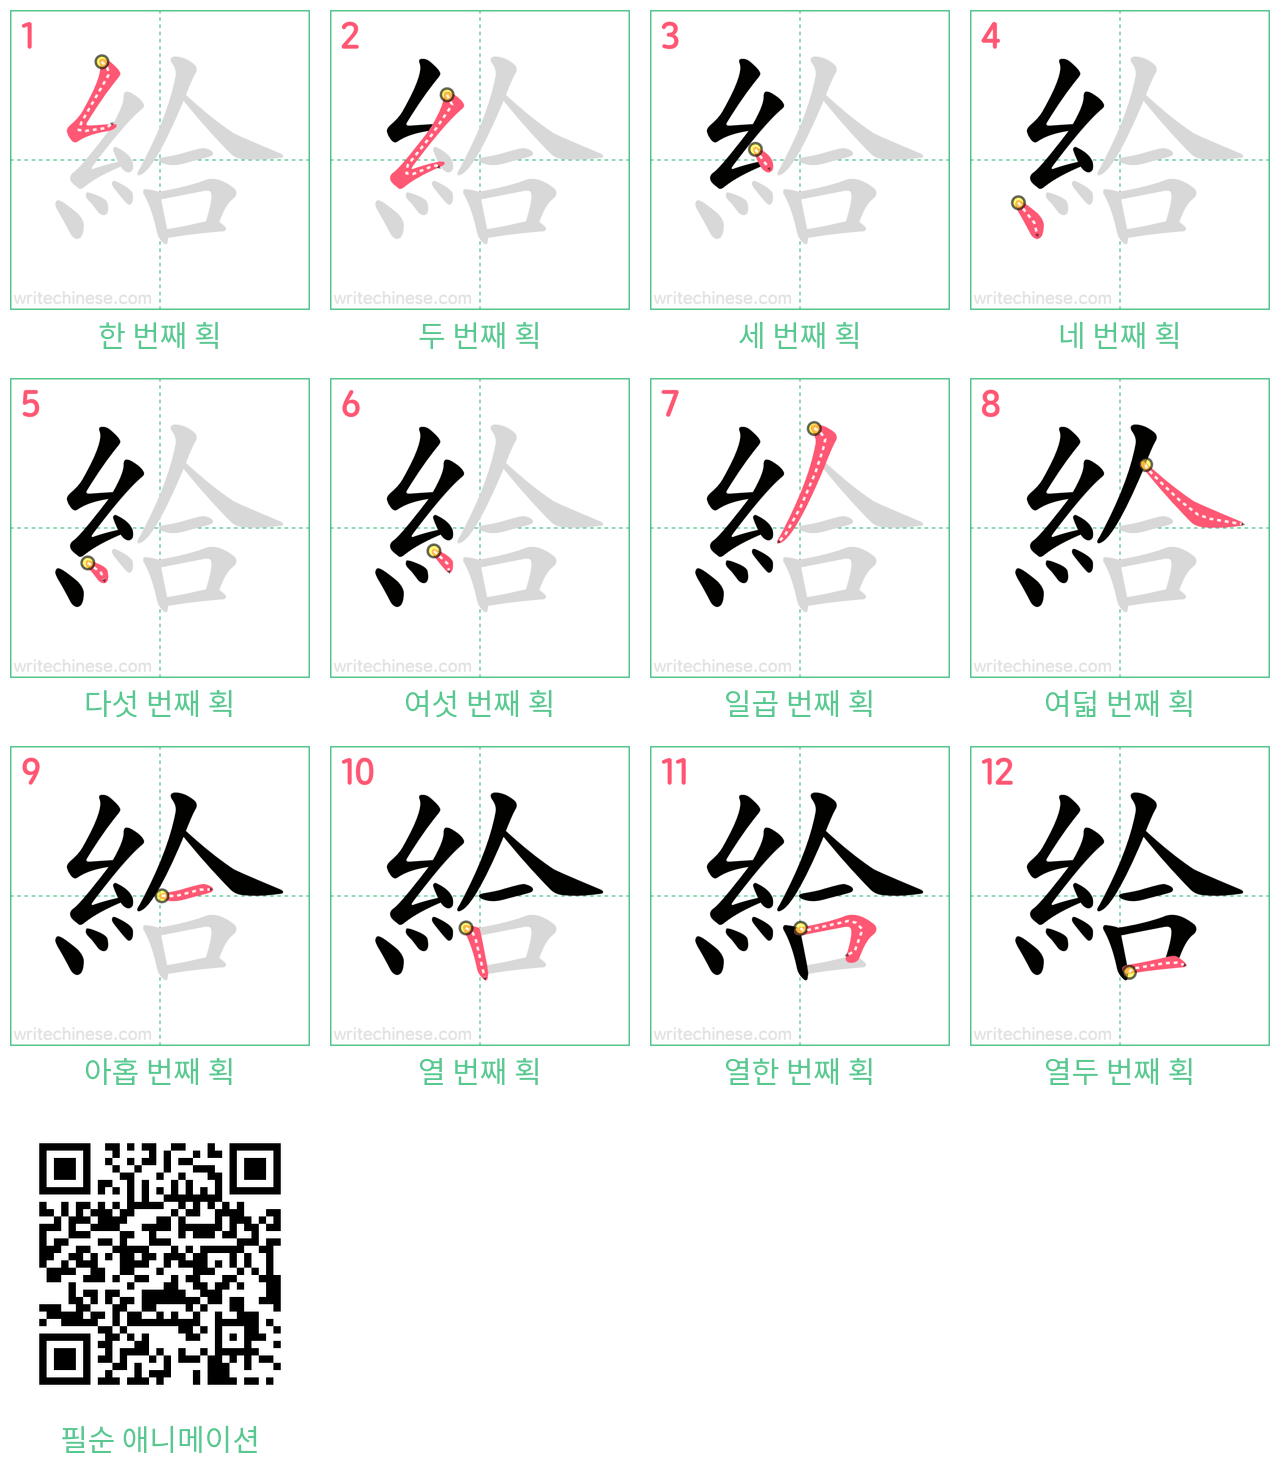 給 step-by-step stroke order diagrams